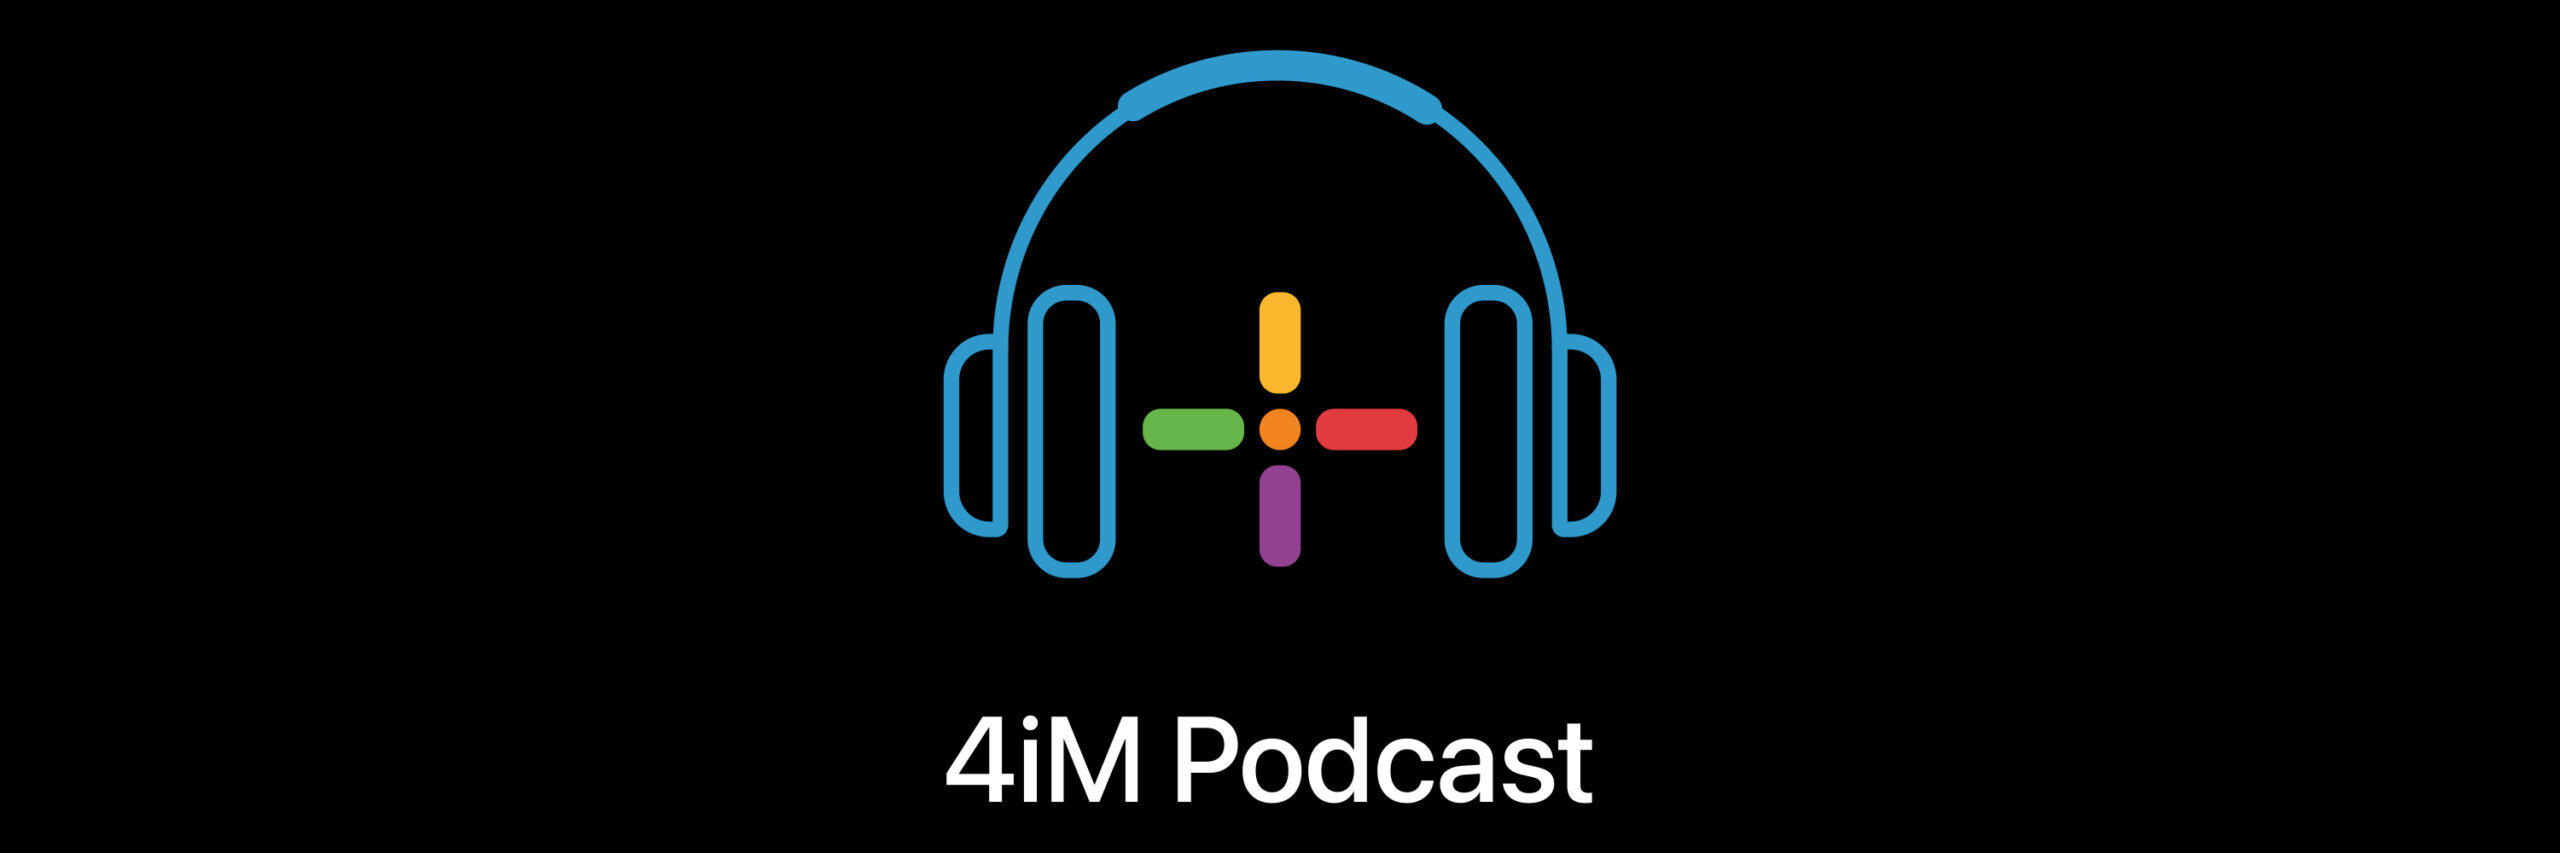 Logo for 4iM Podcast